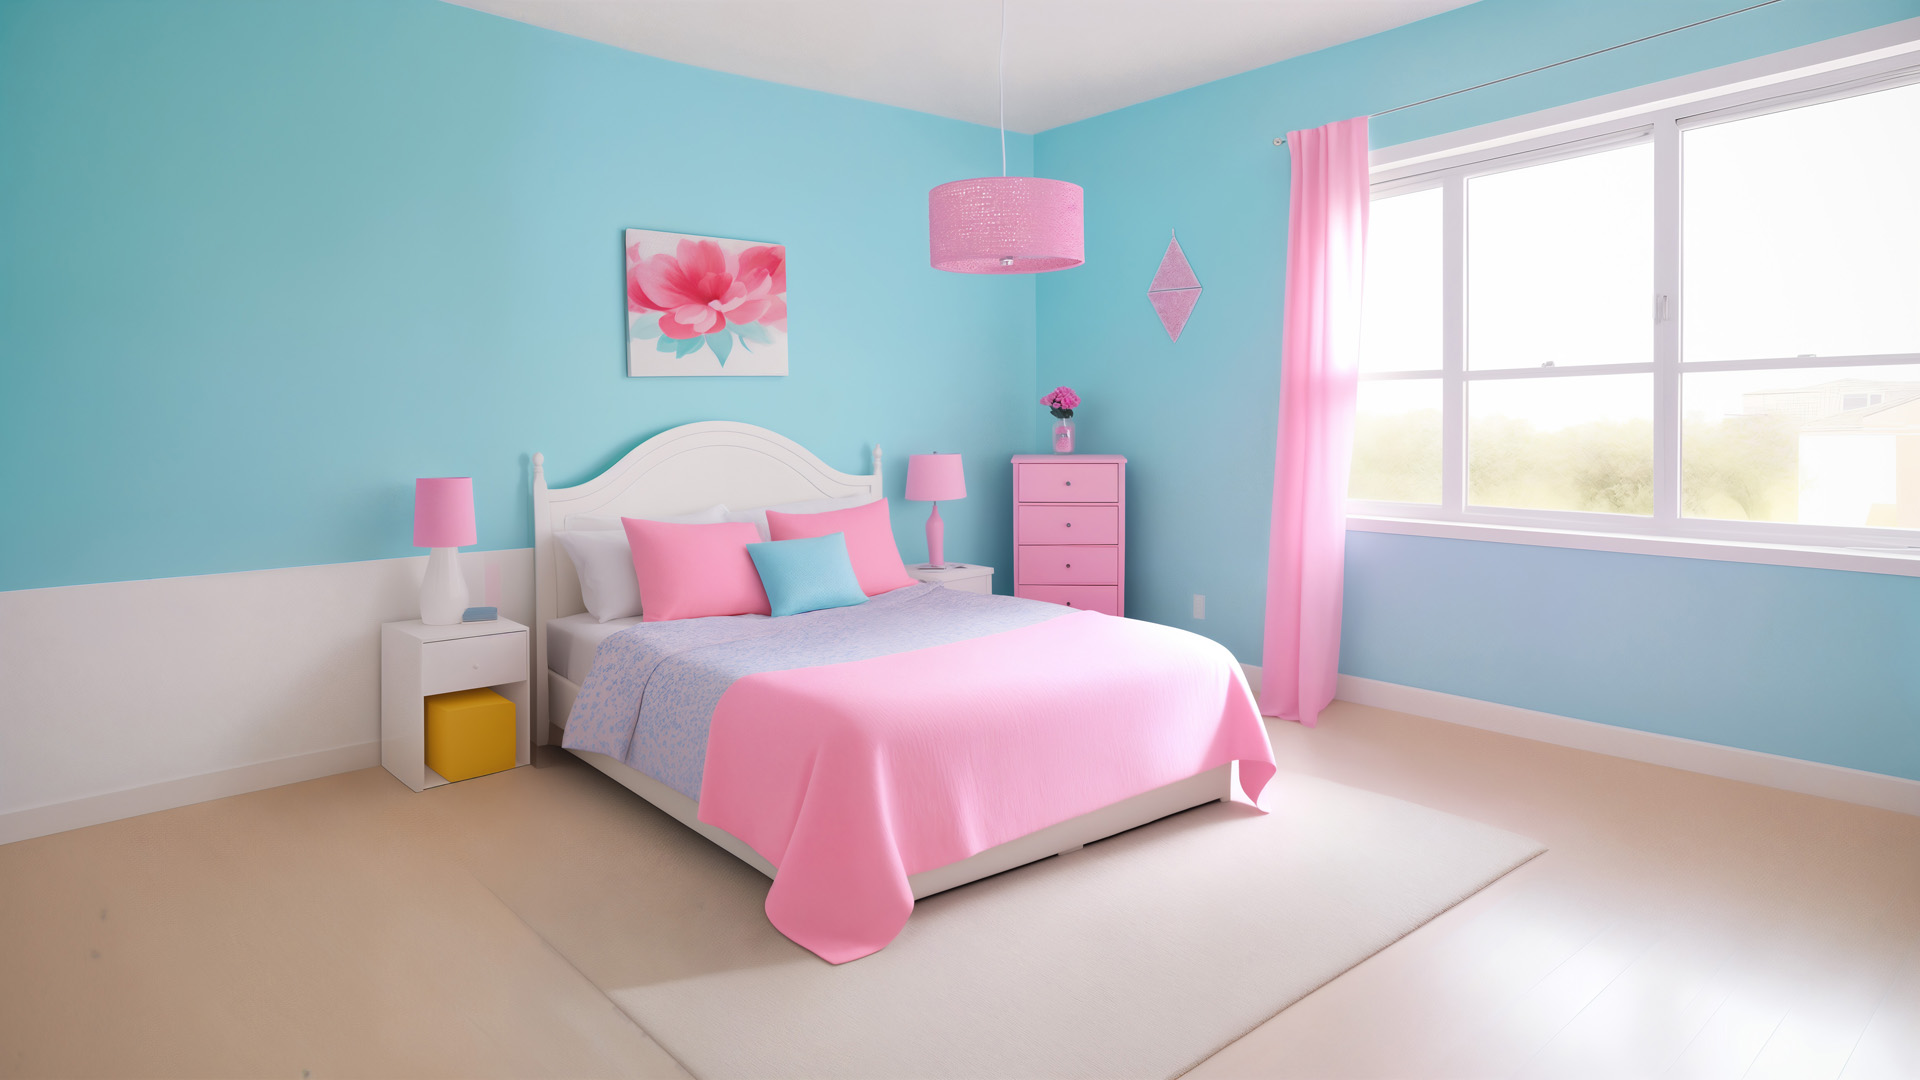 różowy, niebieski, jasny, sypialnia, dziewczynka, pastelowe barwy, wnętrze, przytulność, dziecięcy charakter, marzenia, meble, detale, kolor